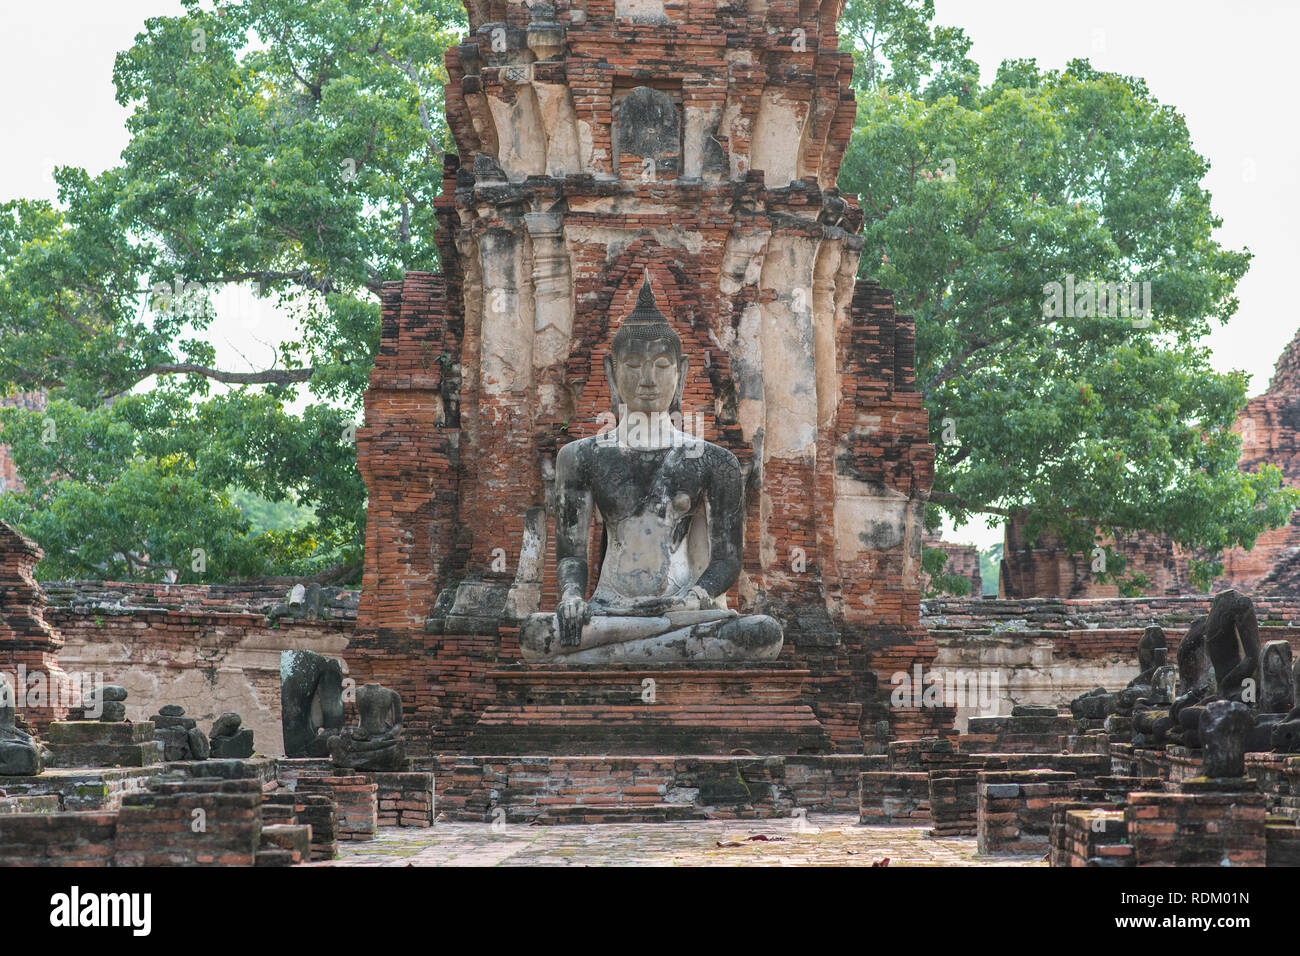 Bouddha assis au Wat Phra Mahathat (Mahatat) à Ayutthaya, Thaïlande. Ruines d'une tour en briques décorées et une statue d'un ancien temple bouddhiste Banque D'Images